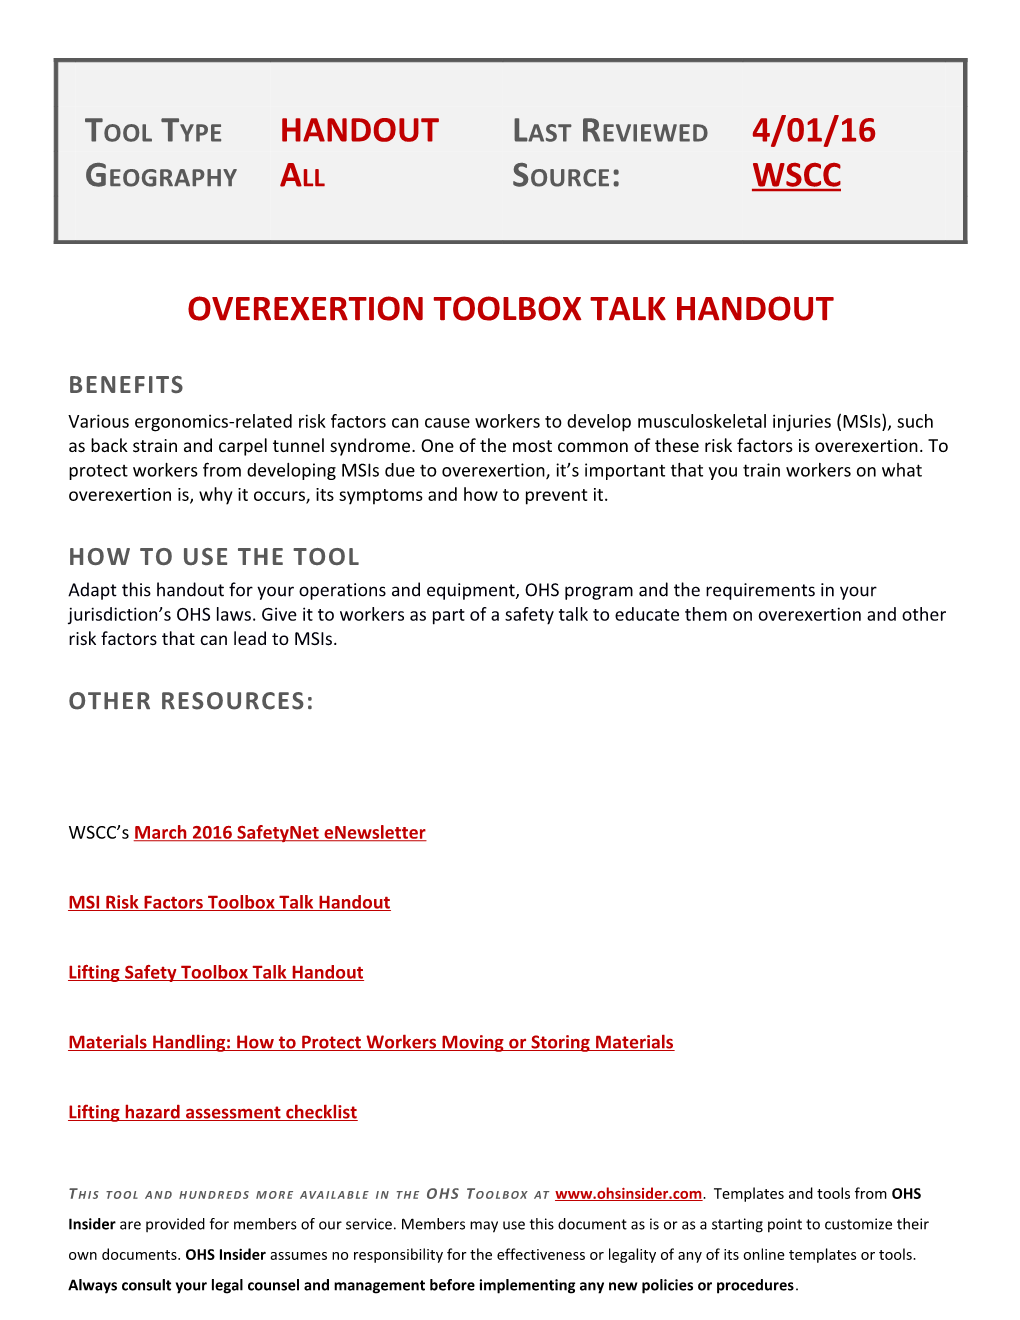 Overexertion Toolbox Talk Handout